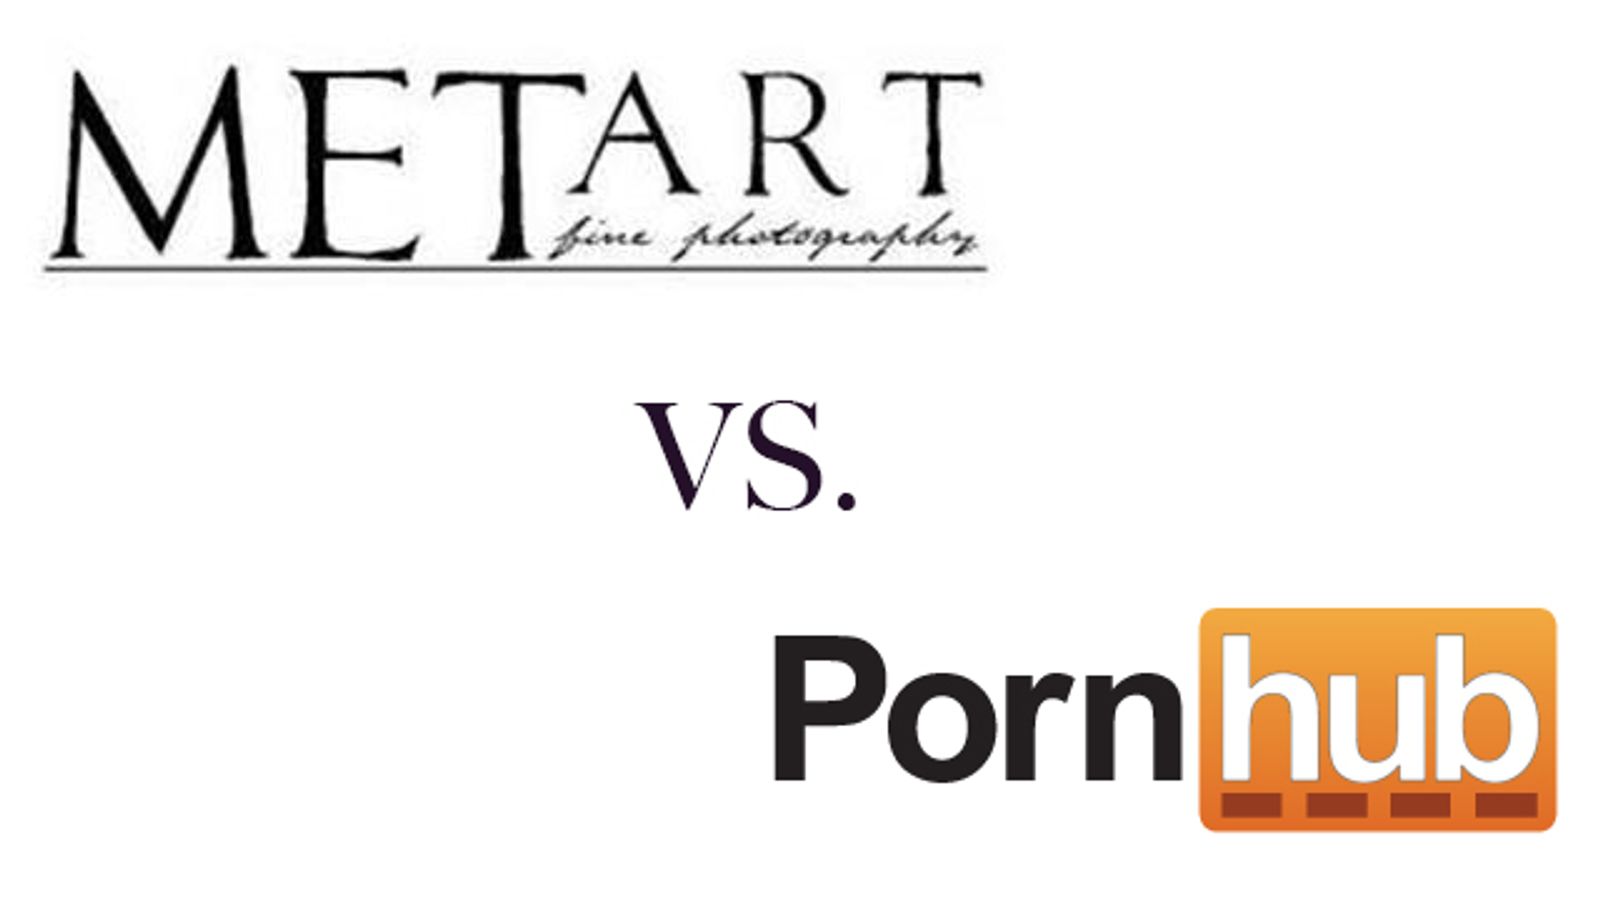 MetArt Sues Pornhub, Alleging Piracy of Content